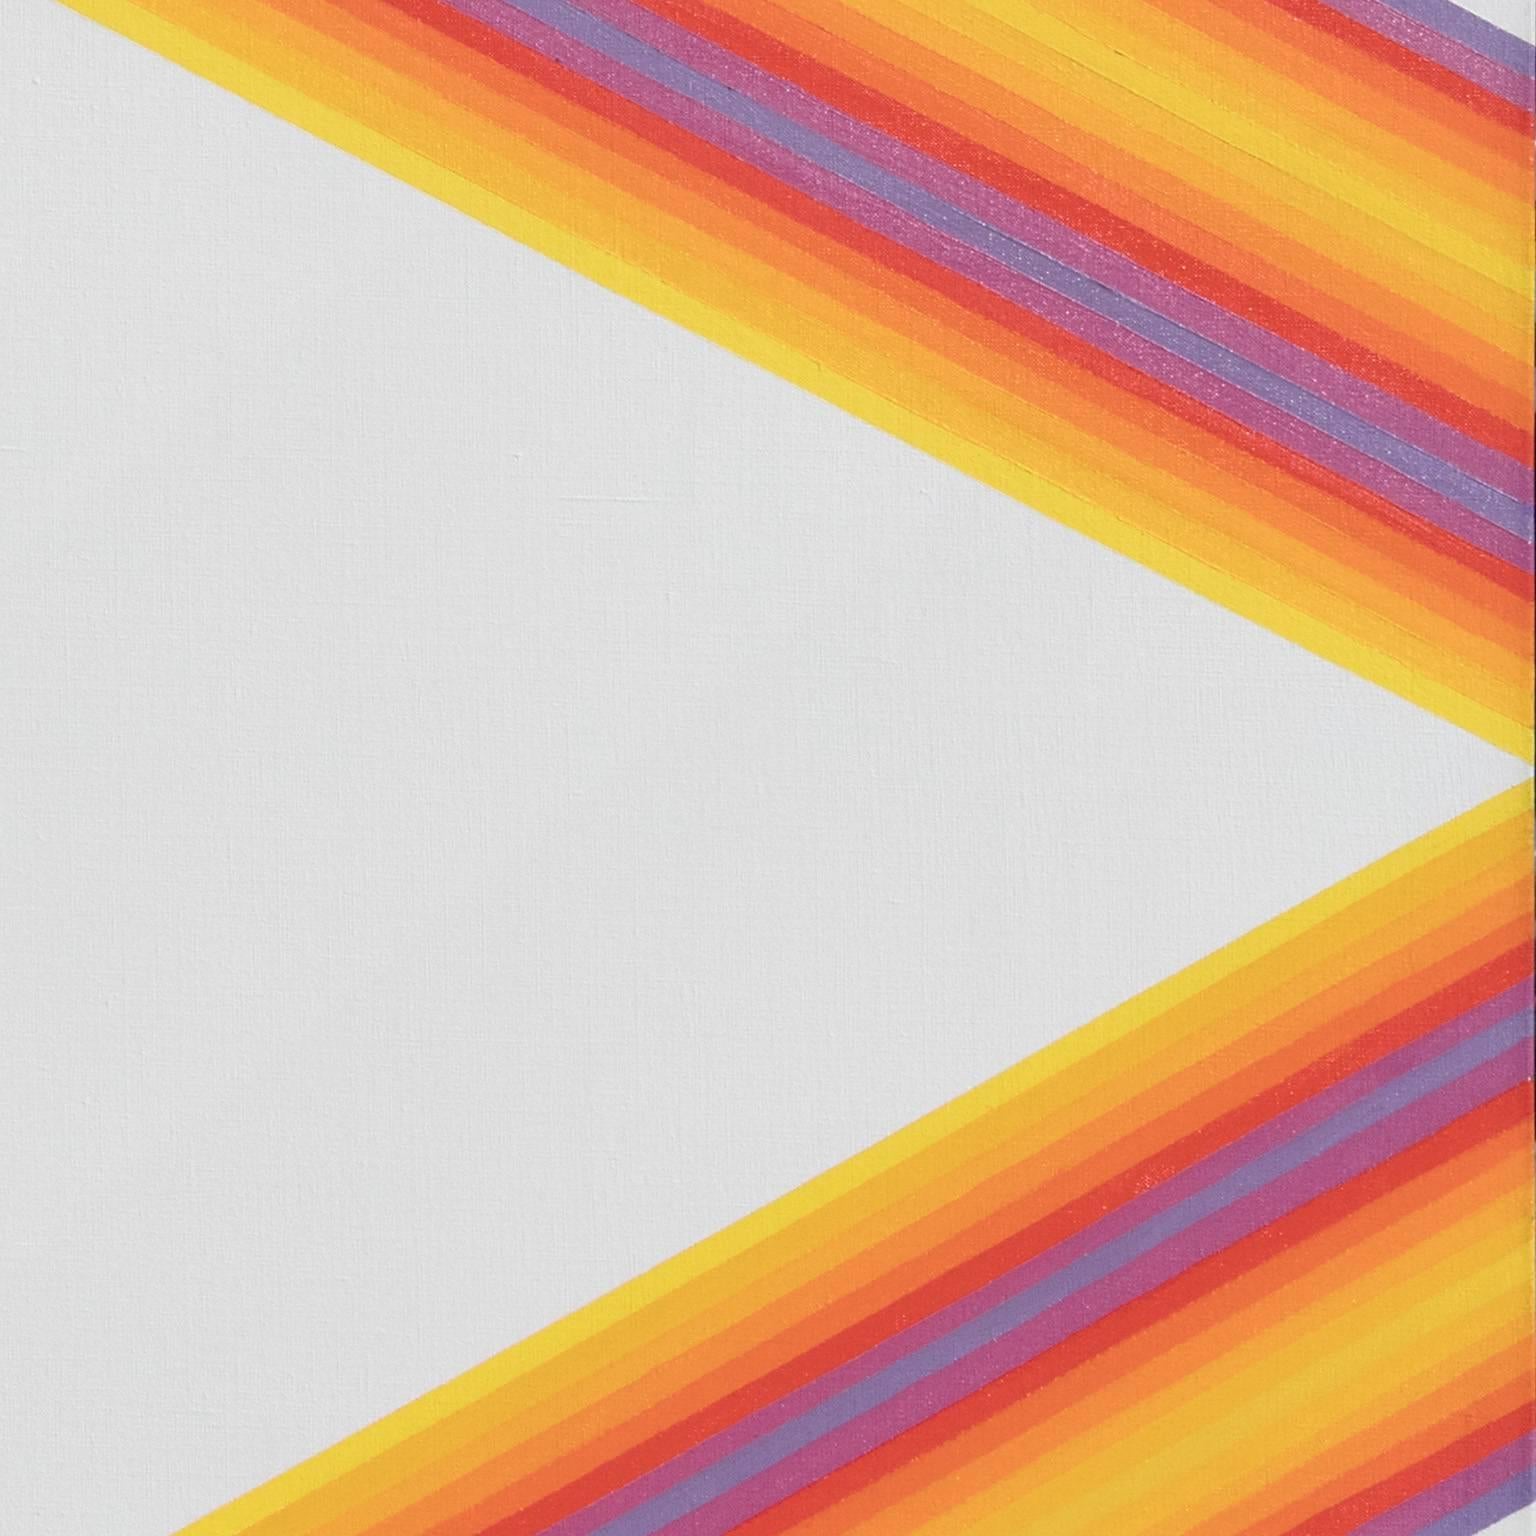 Geometrisch-abstraktes Ölgemälde ohne Titel von Martin Canin, 60x50 Zoll groß. Das Werk von Martin Canin kann mit zwei Bewegungen der 1960er Jahre in Verbindung gebracht werden: Farbfeldmalerei und Op Art. Wie viele Künstler dieser Zeit konzentriert